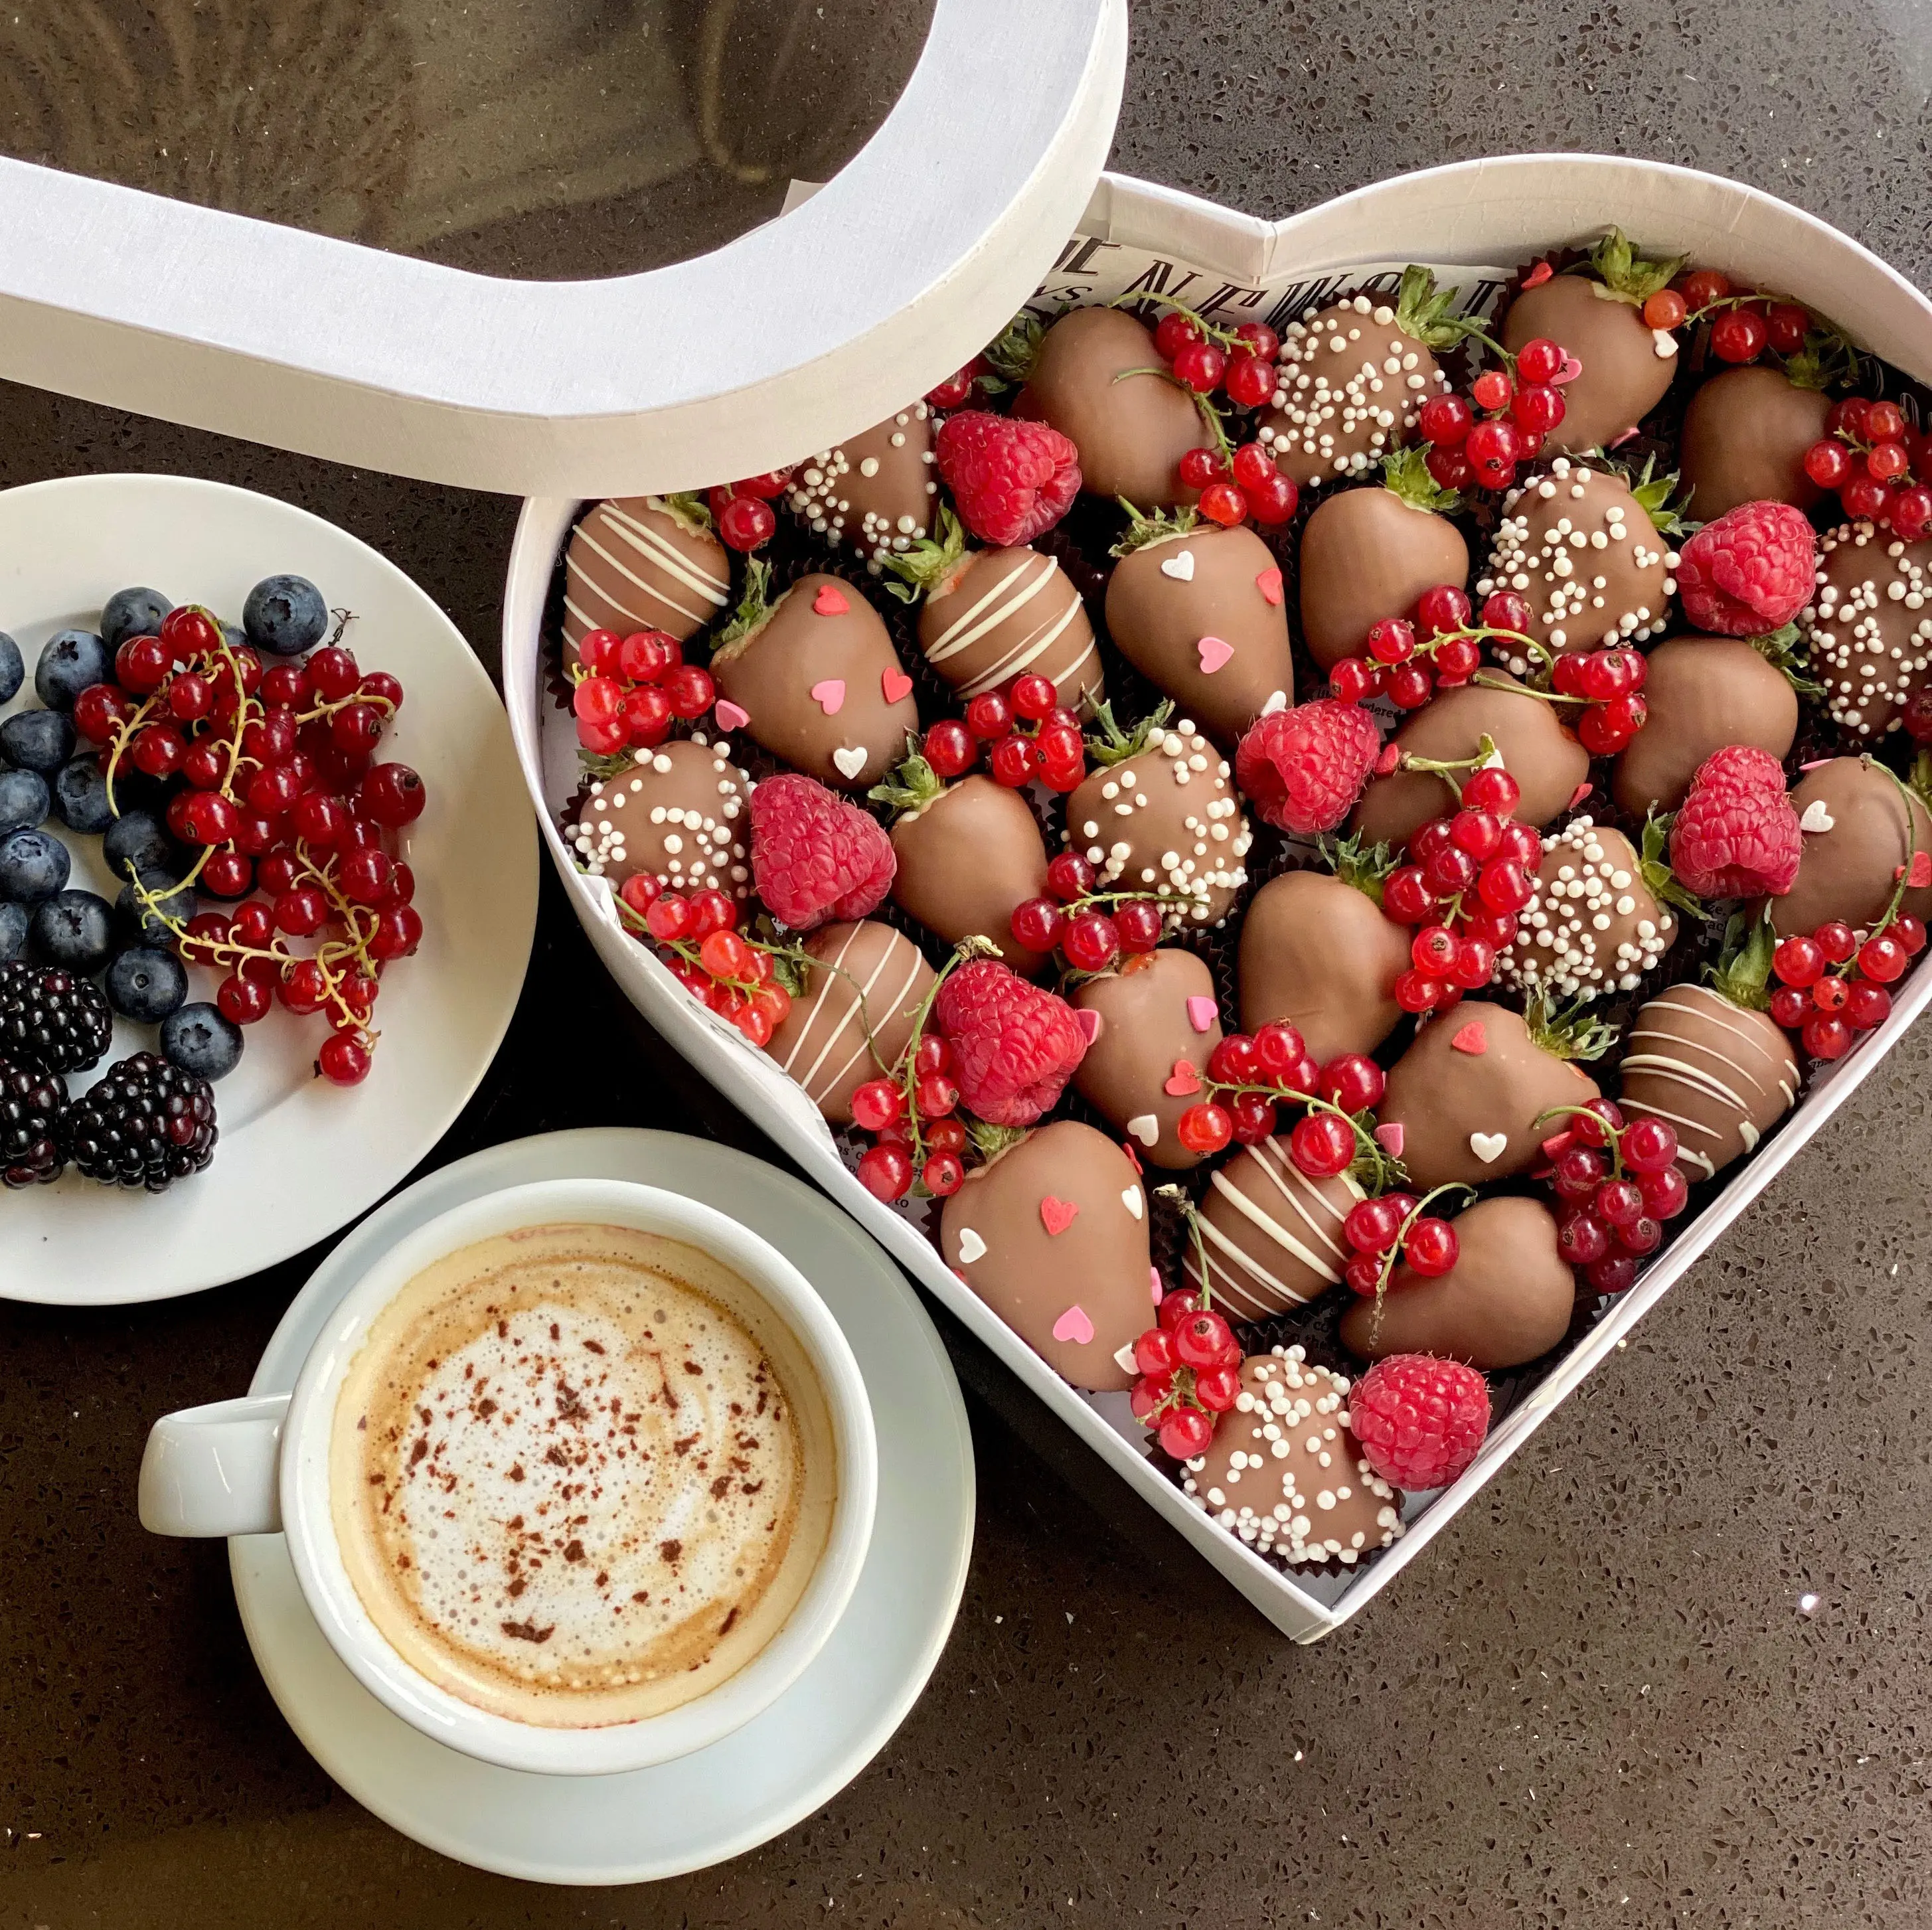 Подарочный набор из ягод в бельгийском шоколаде "Сердце"5 100 руб.. Фото N2